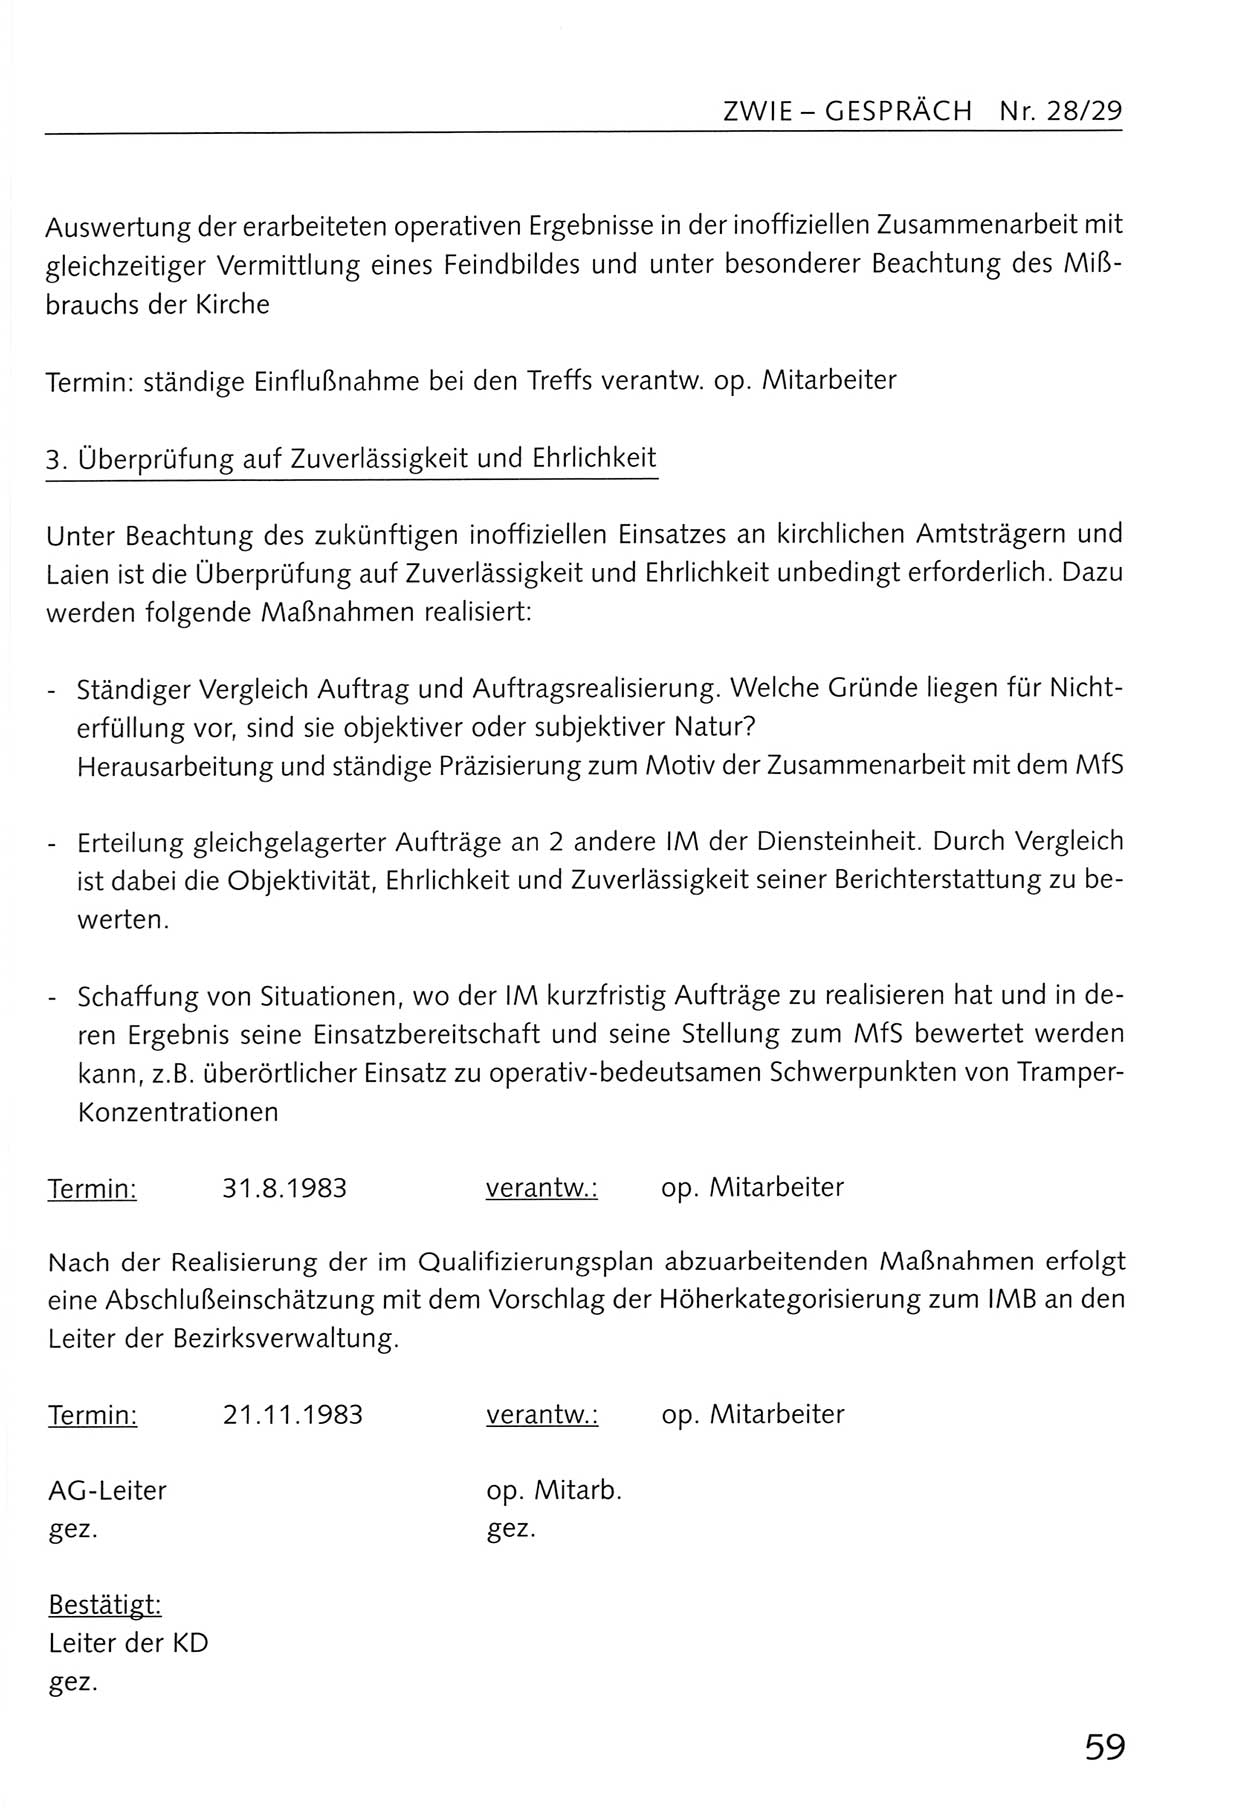 Zwie-Gespräch, Beiträge zum Umgang mit der Staatssicherheits-Vergangenheit [Deutsche Demokratische Republik (DDR)], Ausgabe Nr. 28/29, Berlin 1995, Seite 59 (Zwie-Gespr. Ausg. 28/29 1995, S. 59)